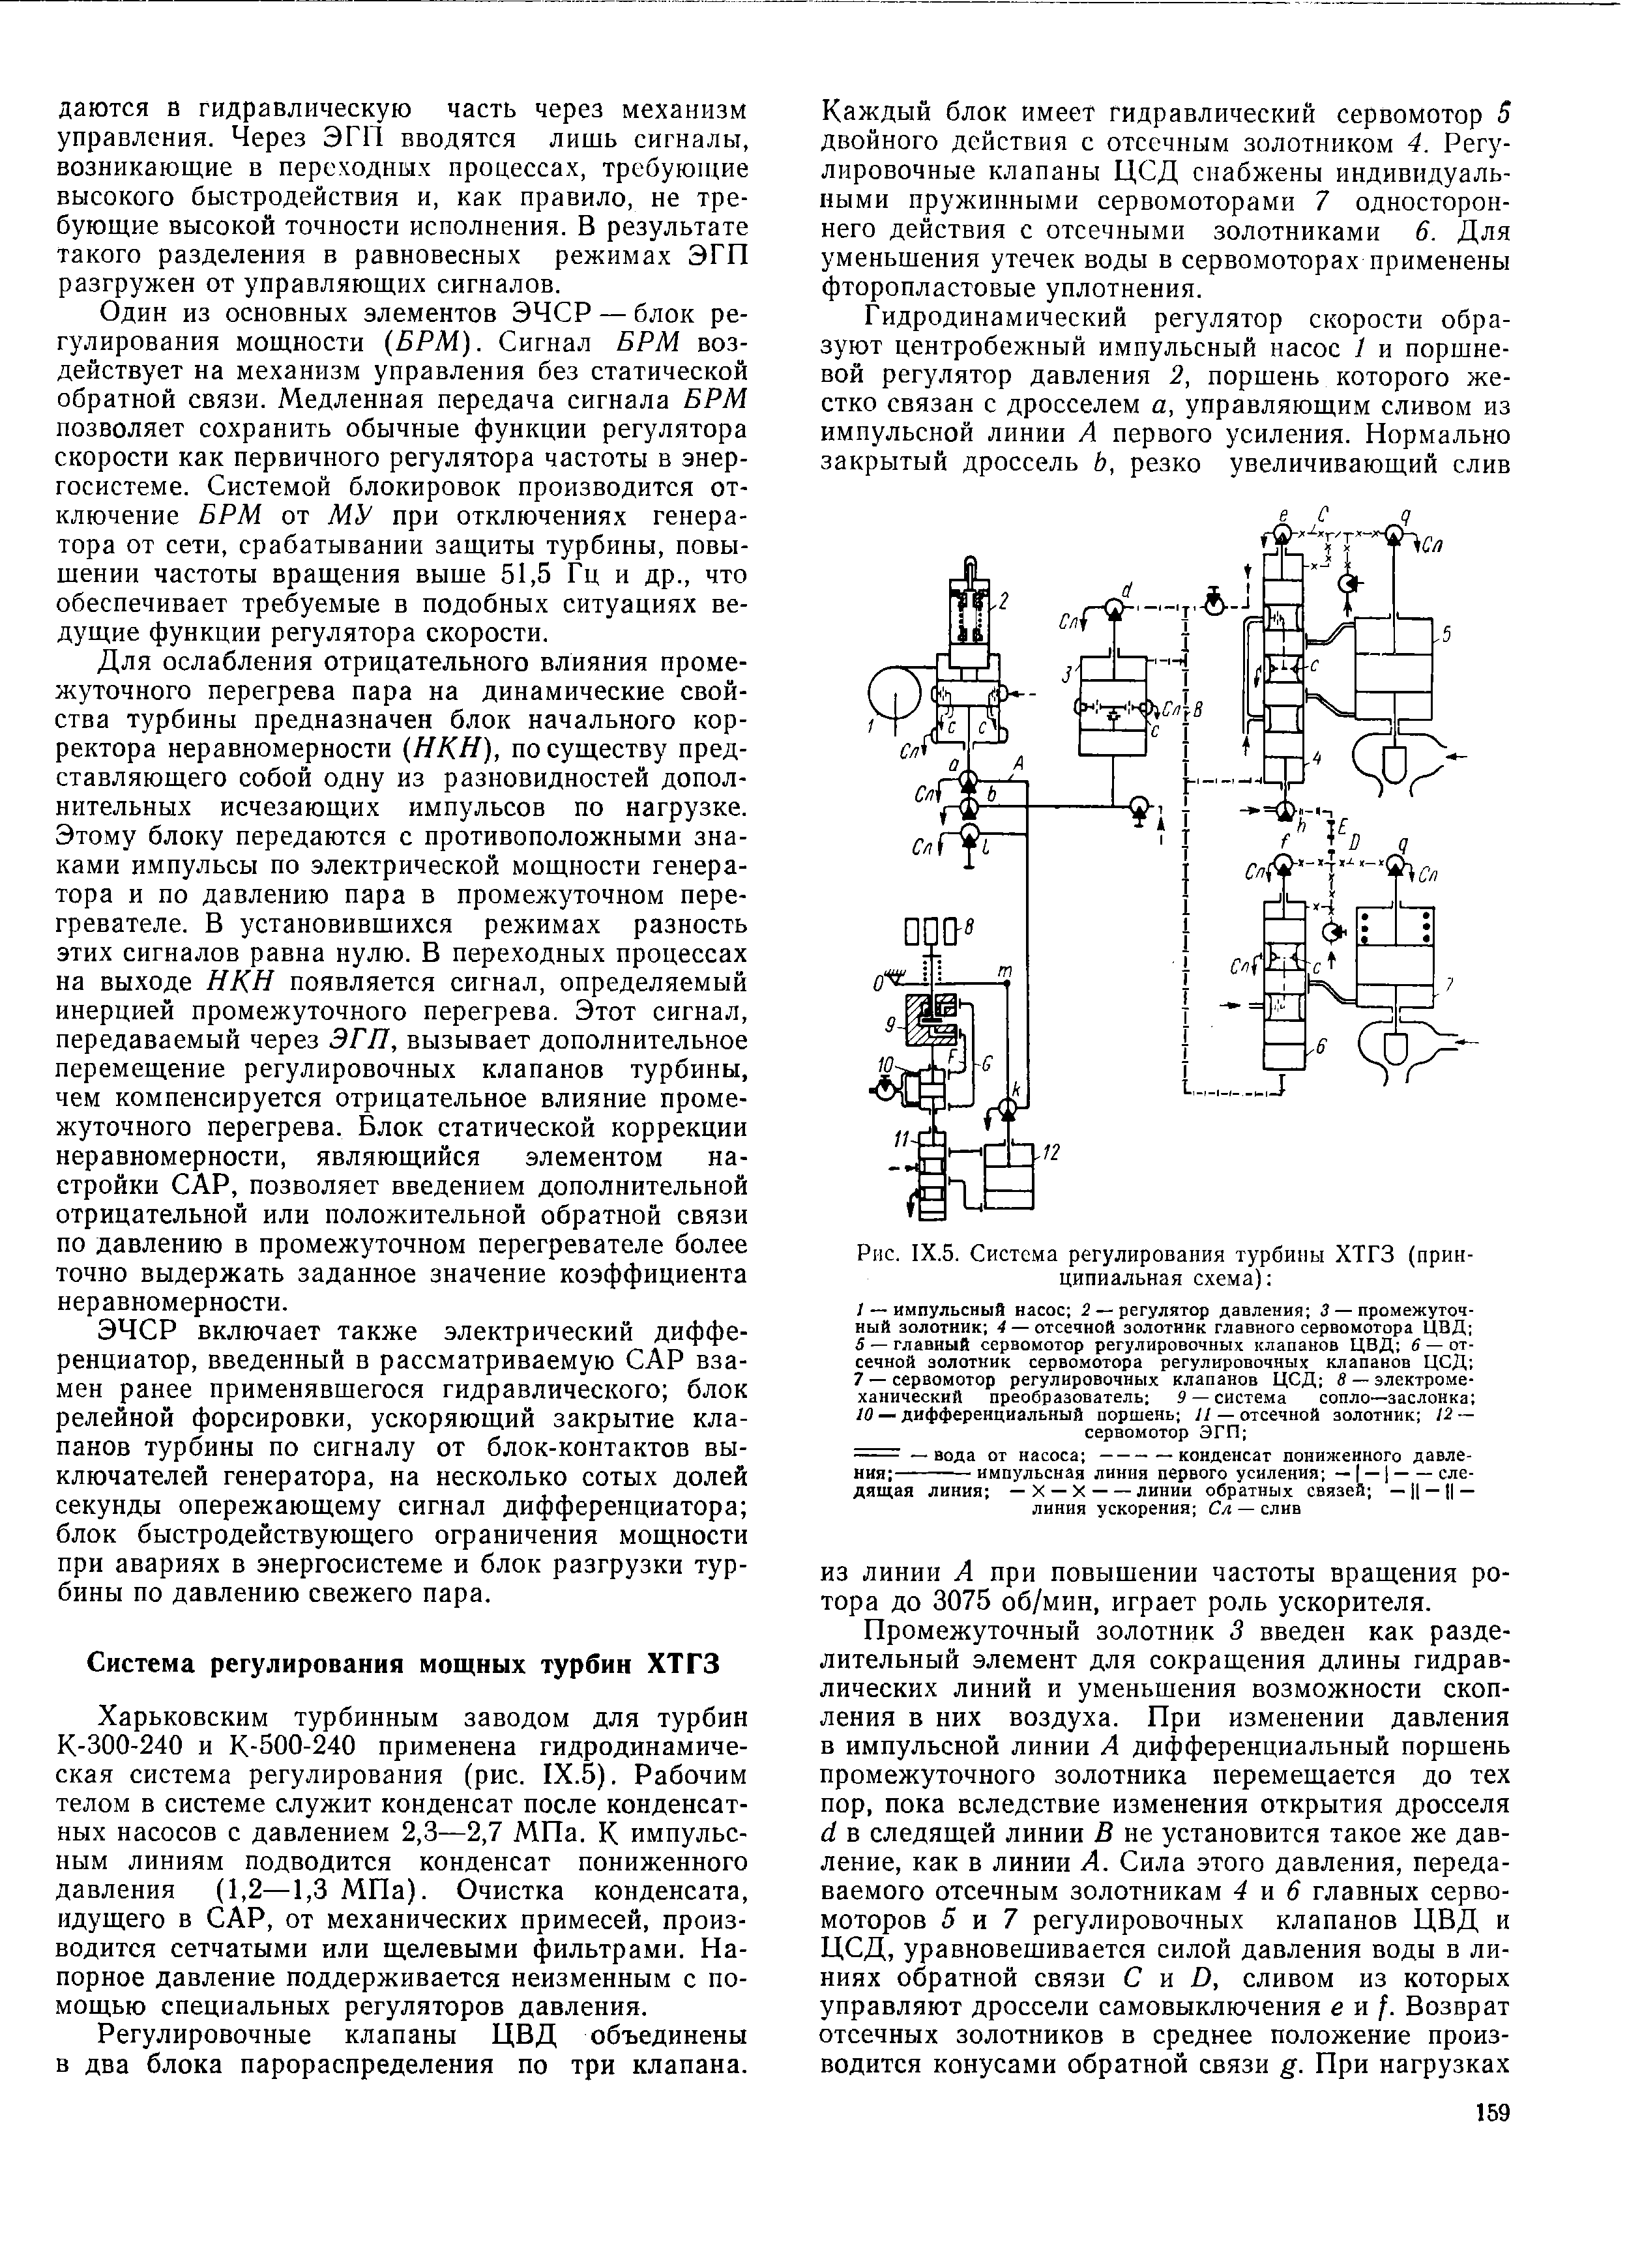 Рис. IX.5. Система регулирования турбины ХТГЗ (принципиальная схема) 
